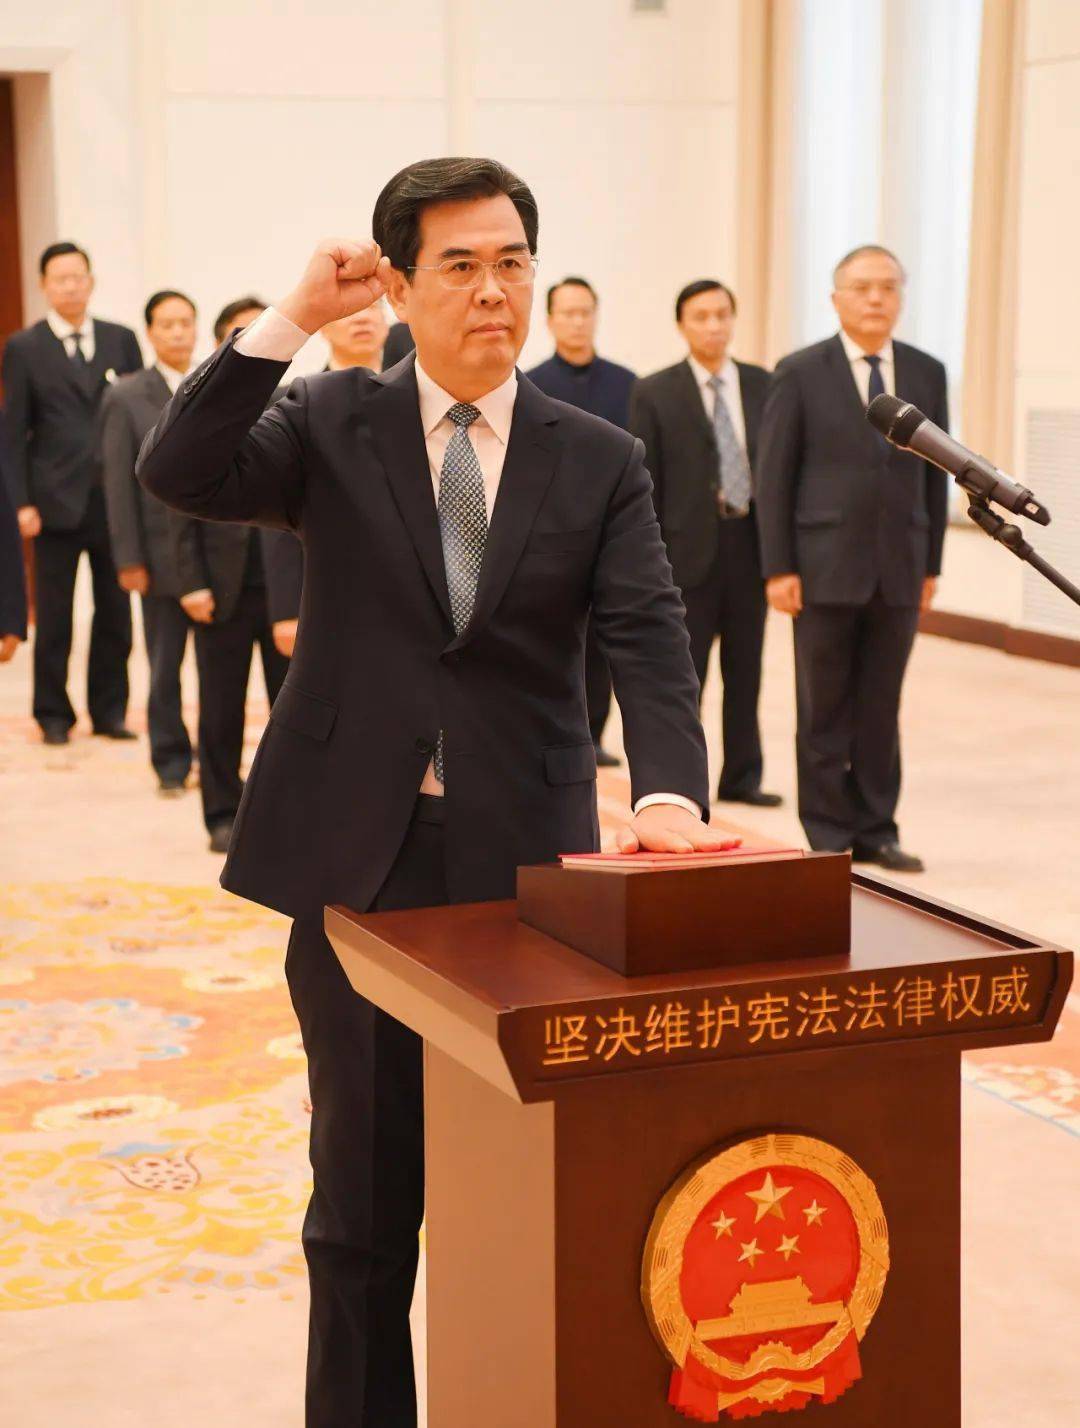 贵州省代省长李炳军向宪法宣誓就职